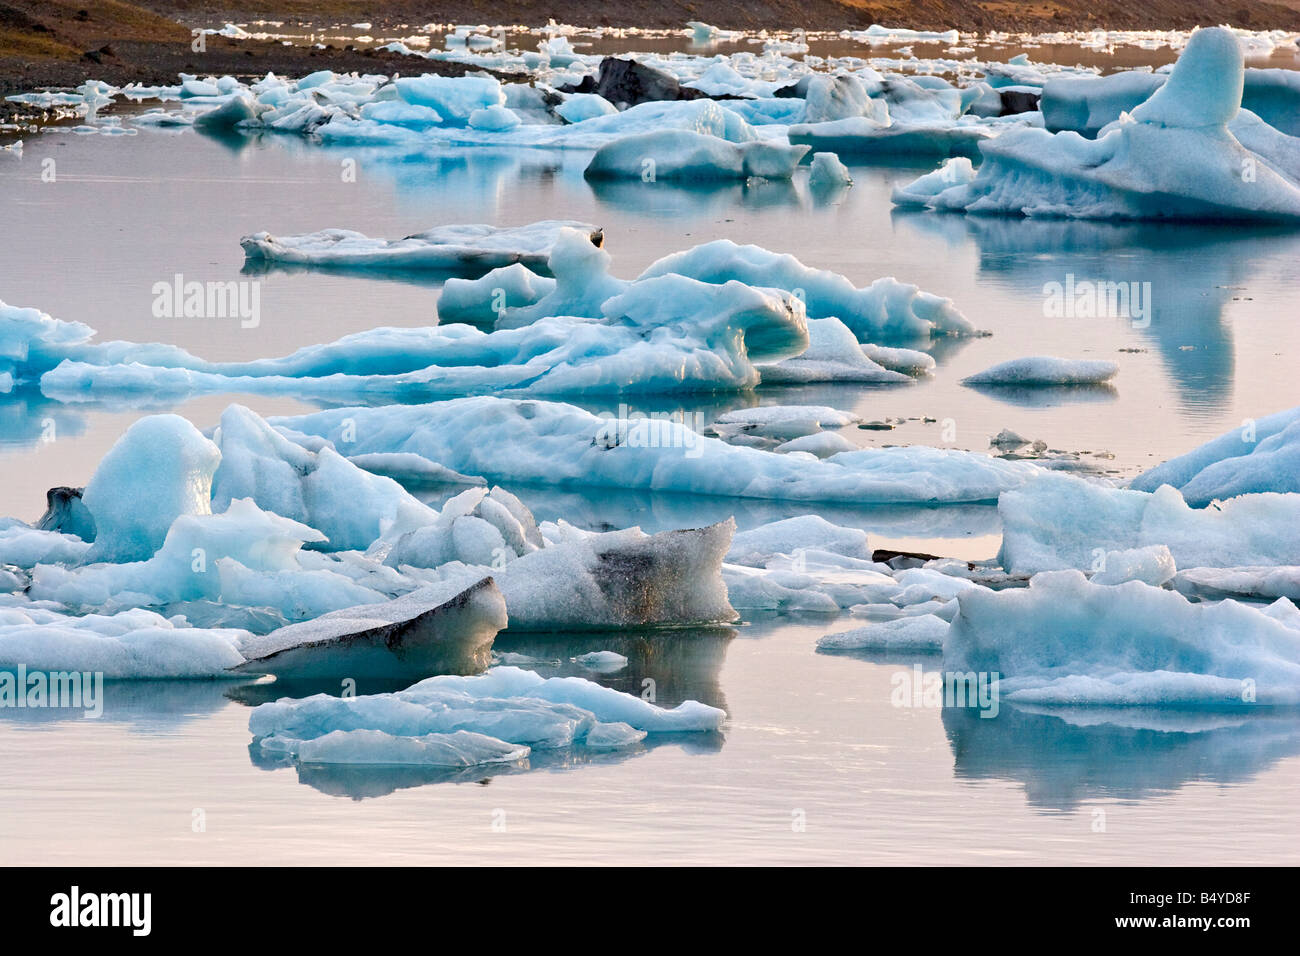 La glace de glacier jökulsárlón lagoon, Iceland. Banque D'Images